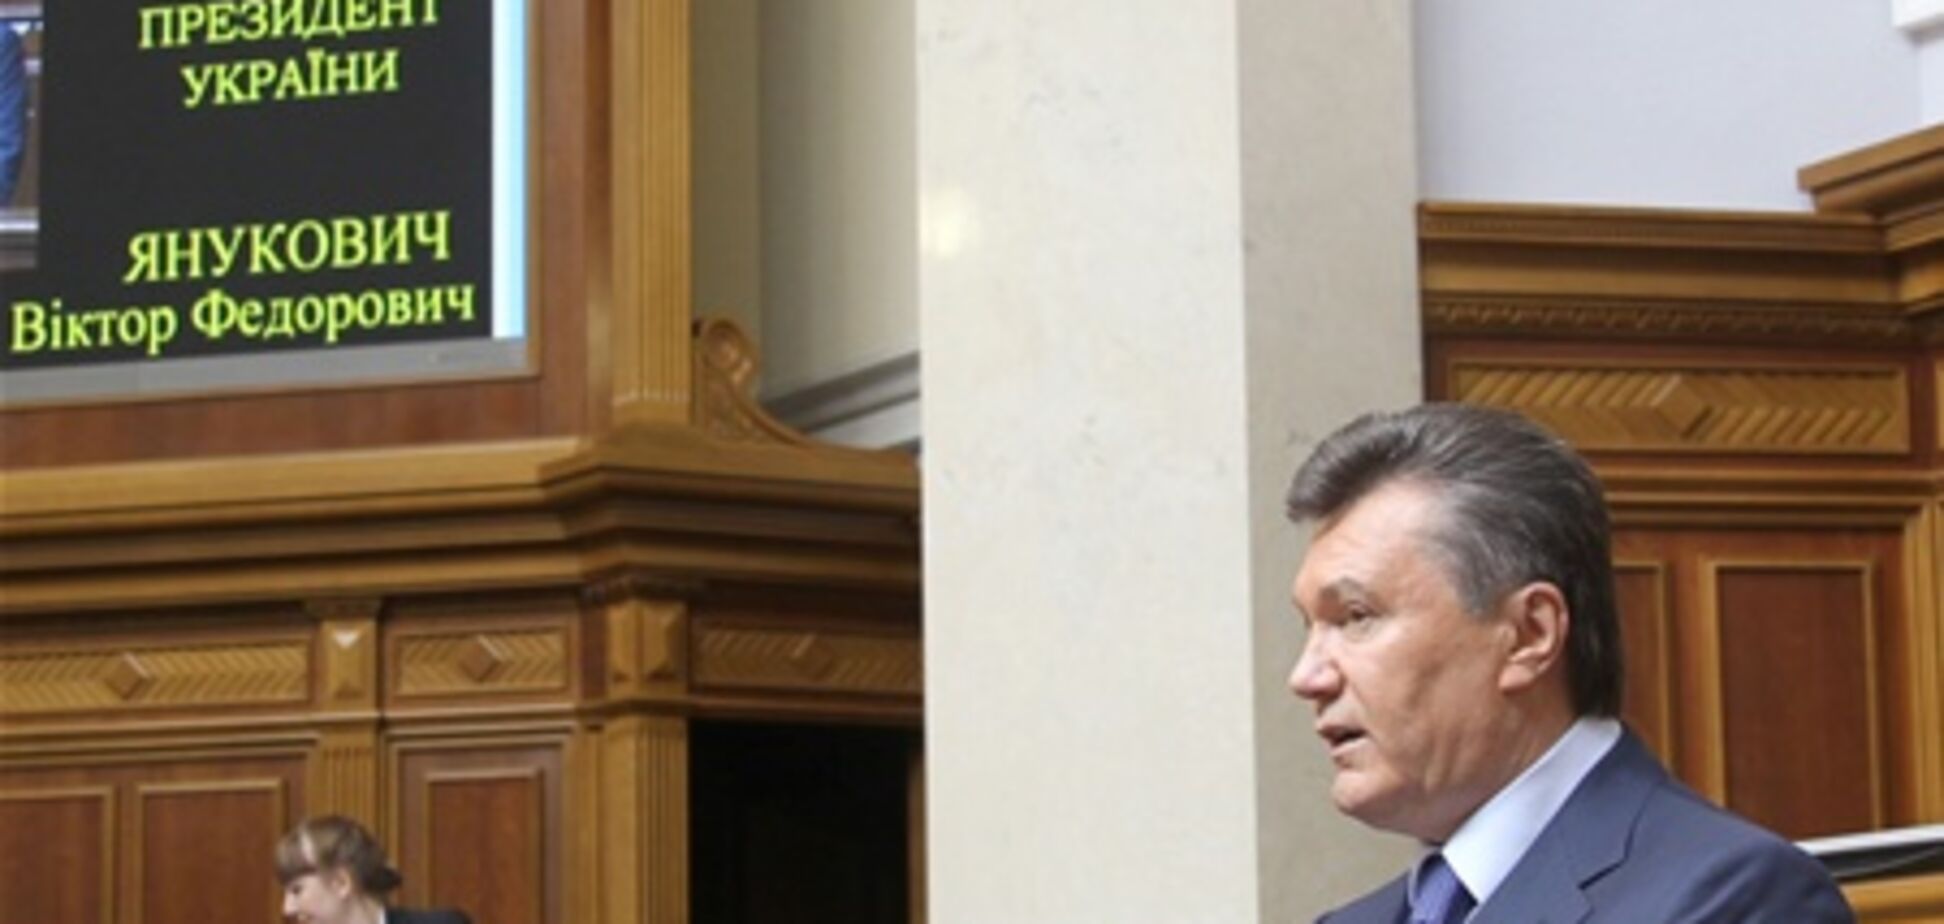 Янукович: месседж надежды на лучшее